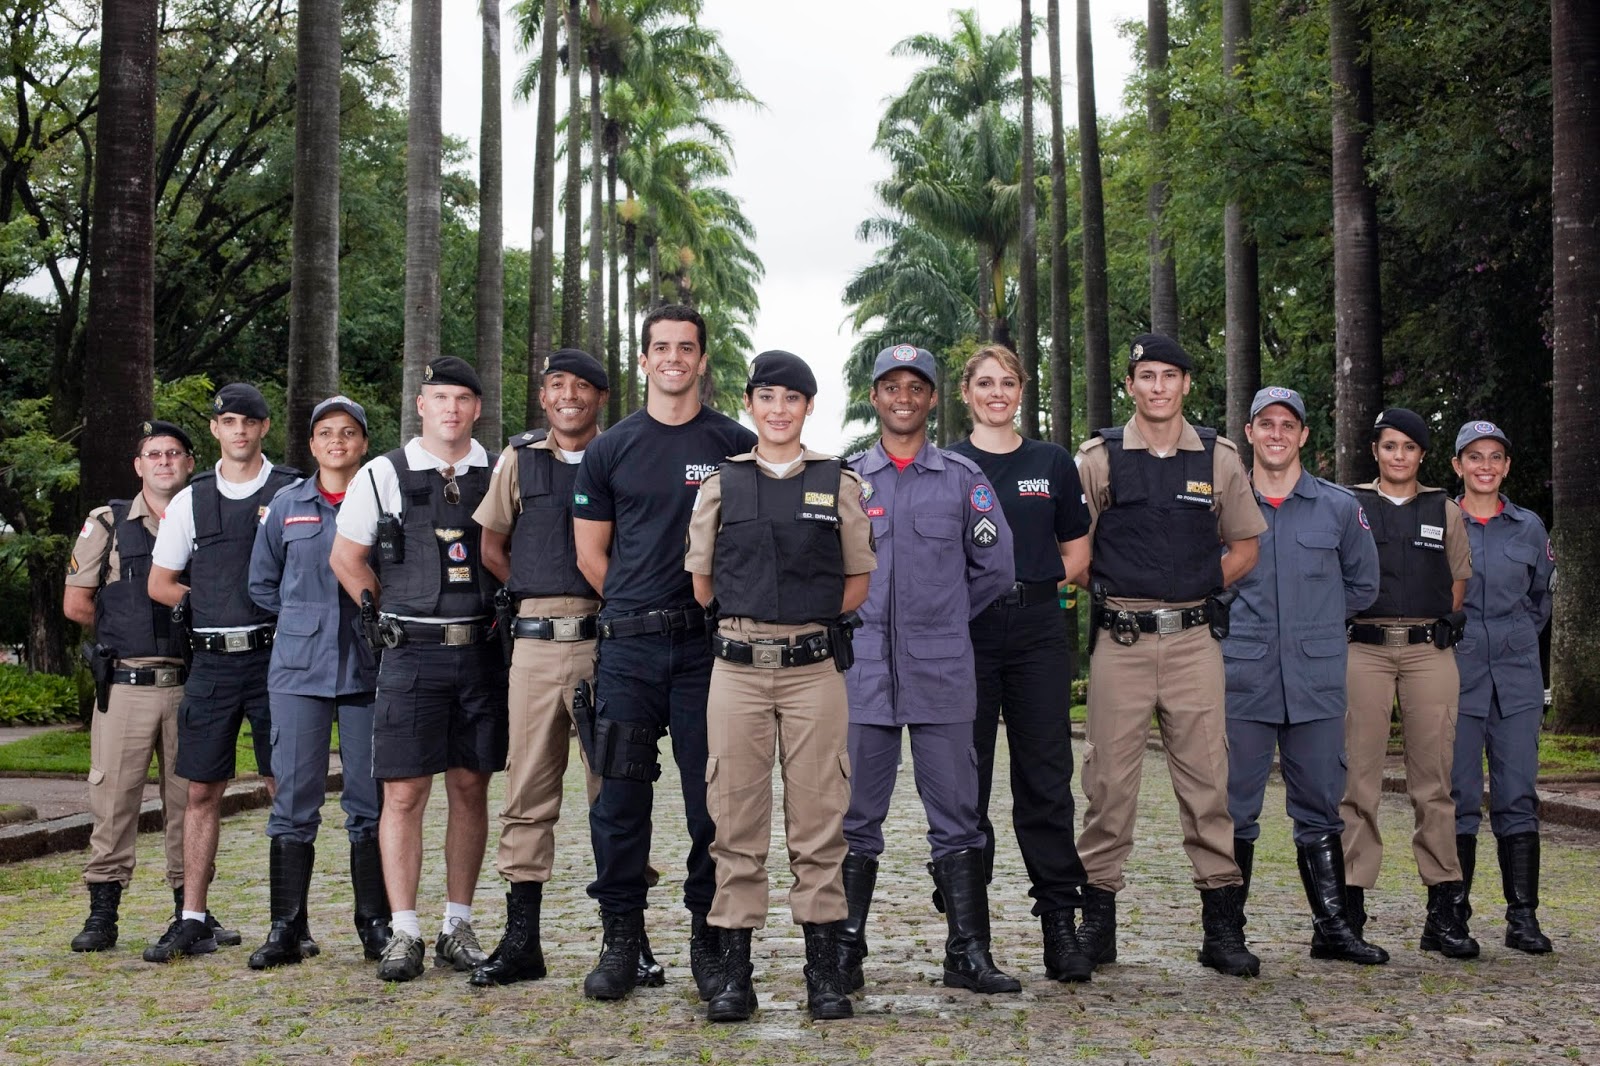 Concurso da Polícia Militar de Minas Gerais 2023 - Monster Concursos